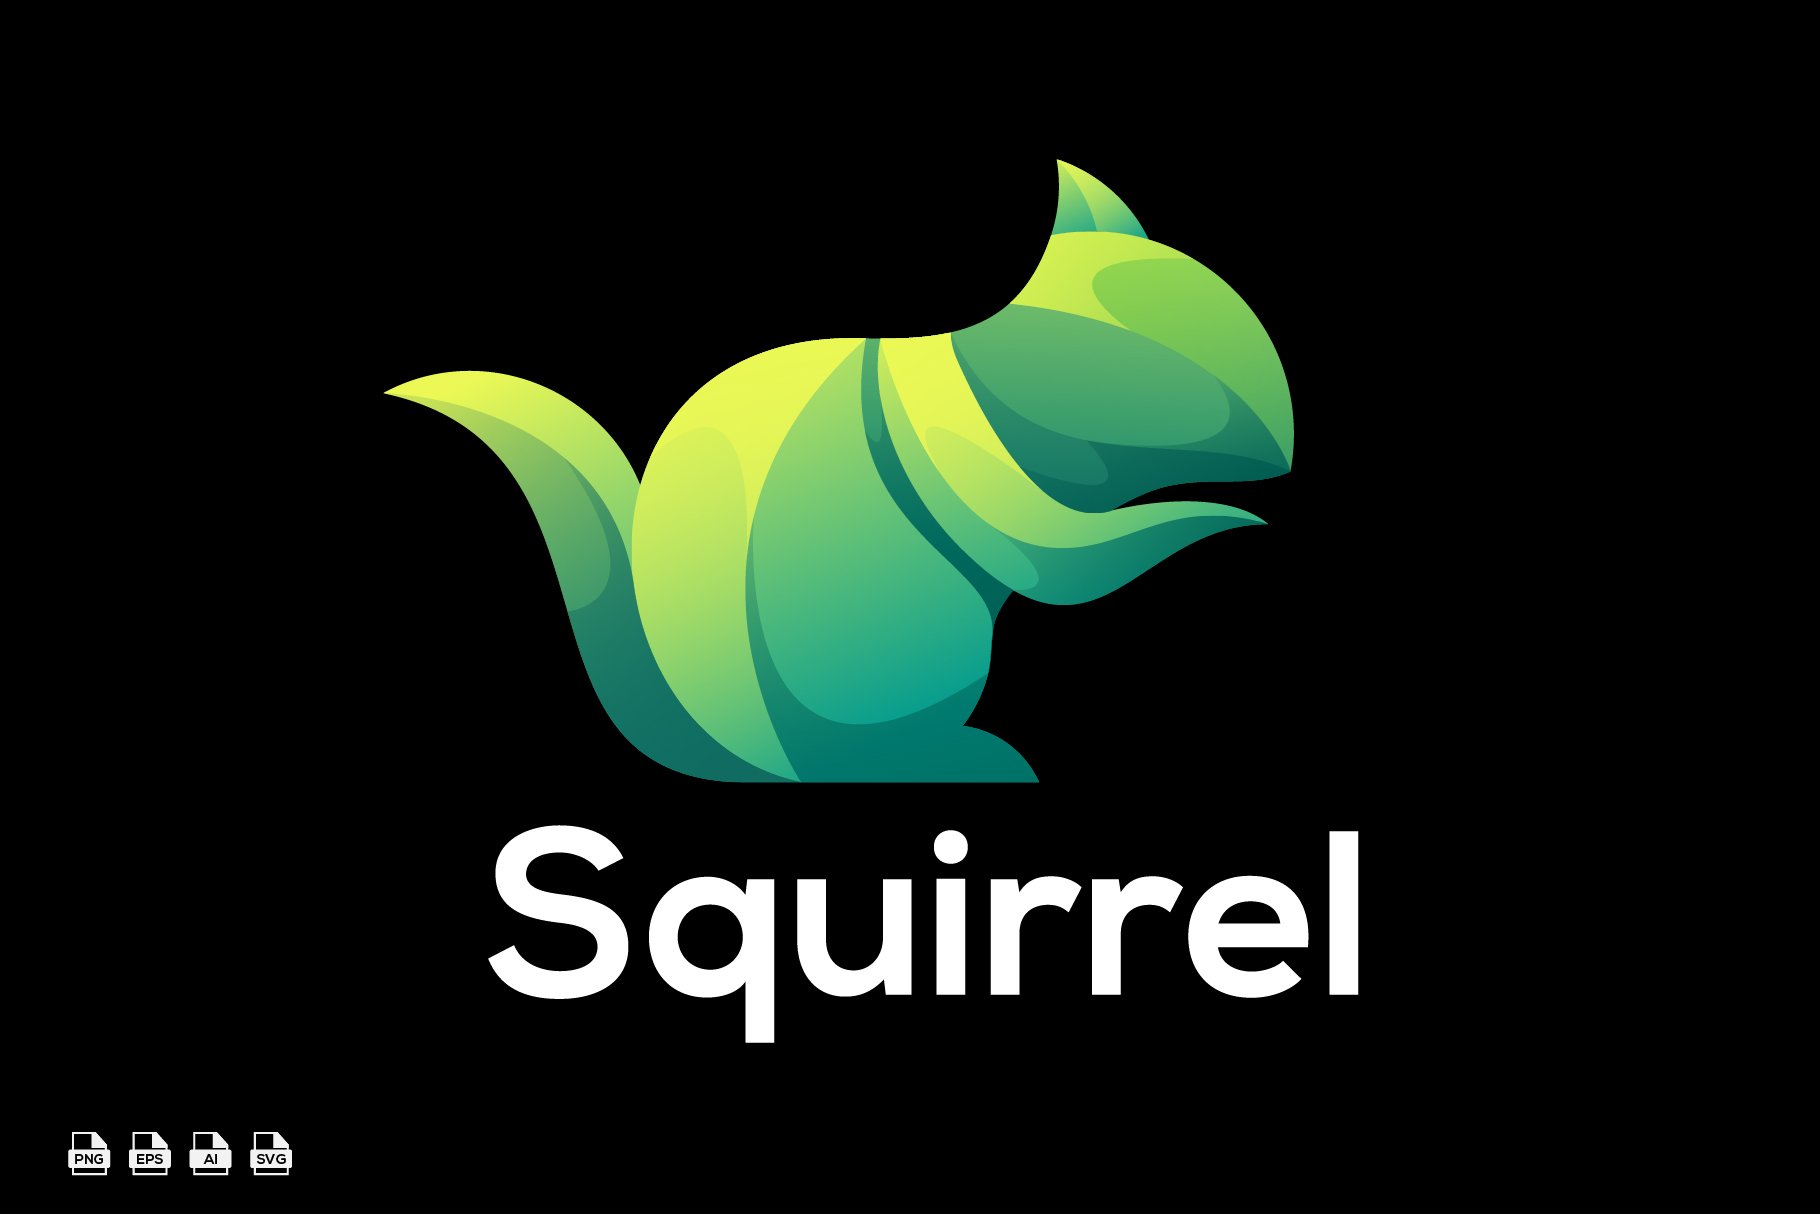 Squirrel gradient design logo cover image.